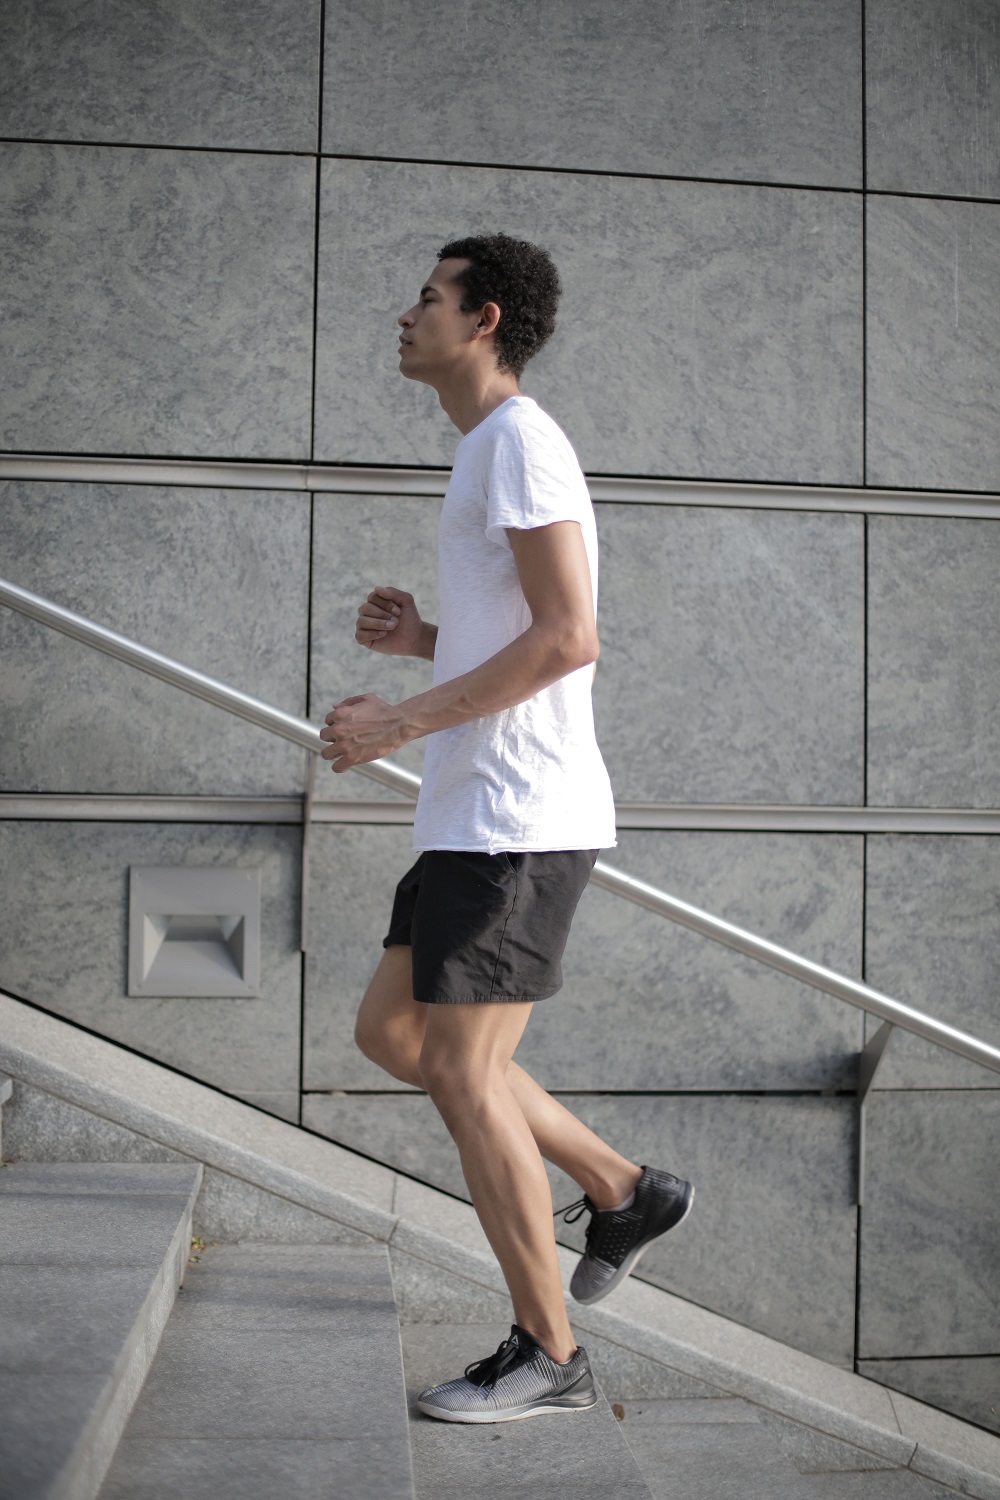 man running up stairs